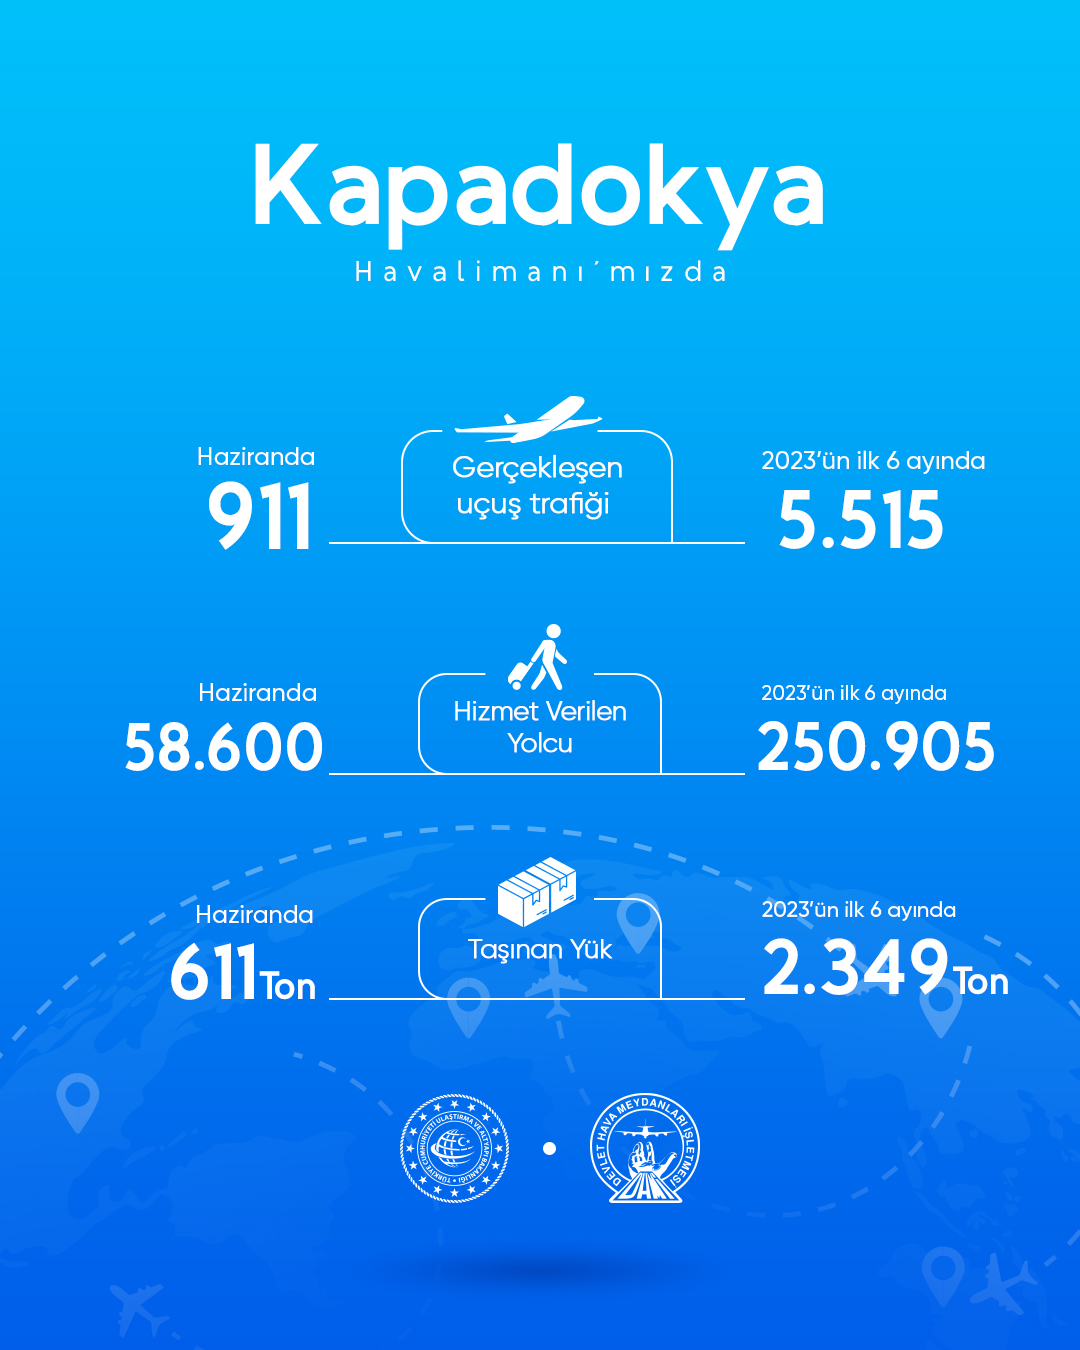 Kapadokya Havalimanı’nda haziran ayında 58.600 yolcuya hizmet verildi 29 Nisan 2024